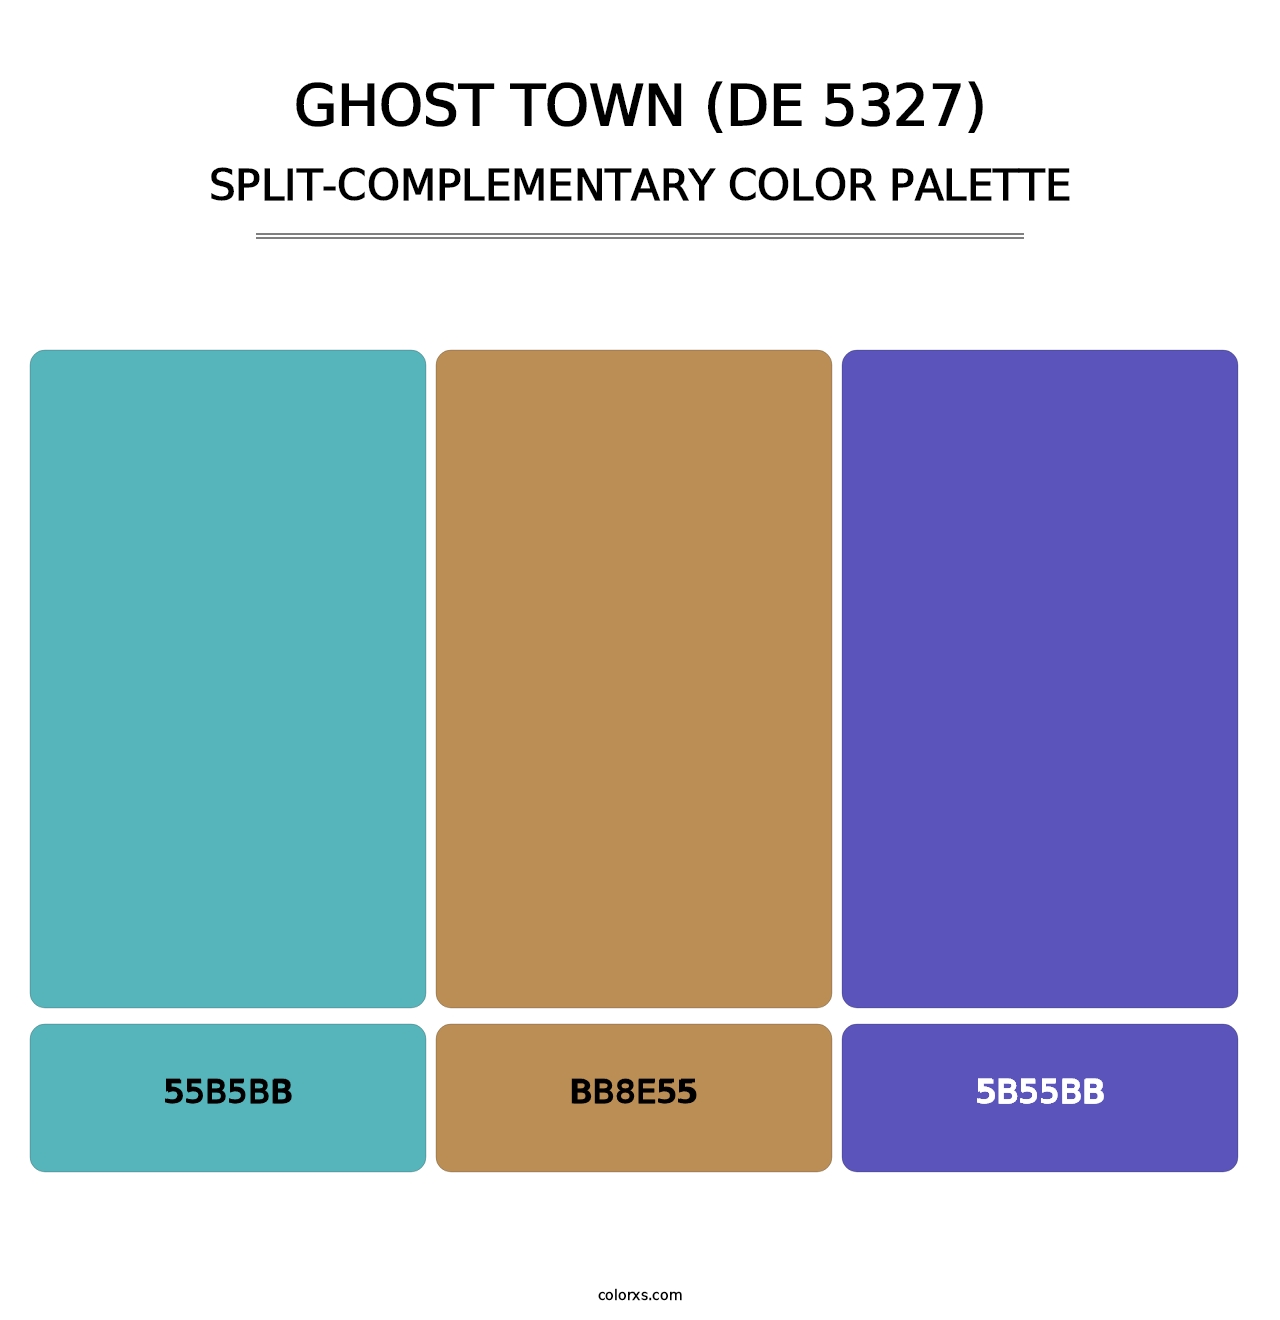 Ghost Town (DE 5327) - Split-Complementary Color Palette